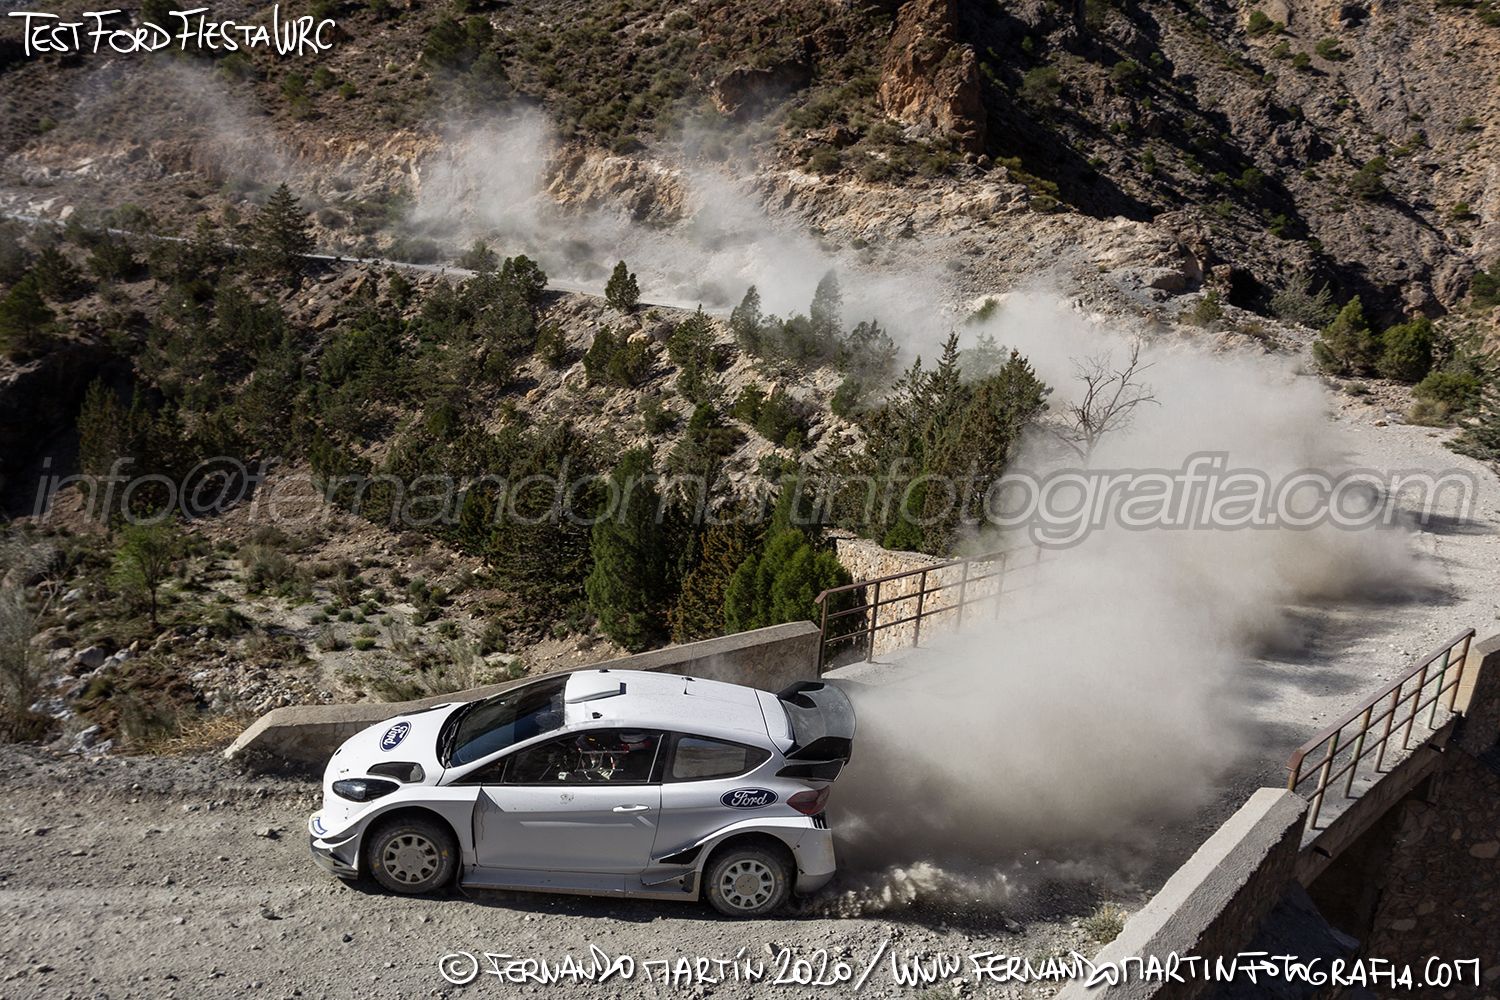 Test Ford Fiesta WRC 2020